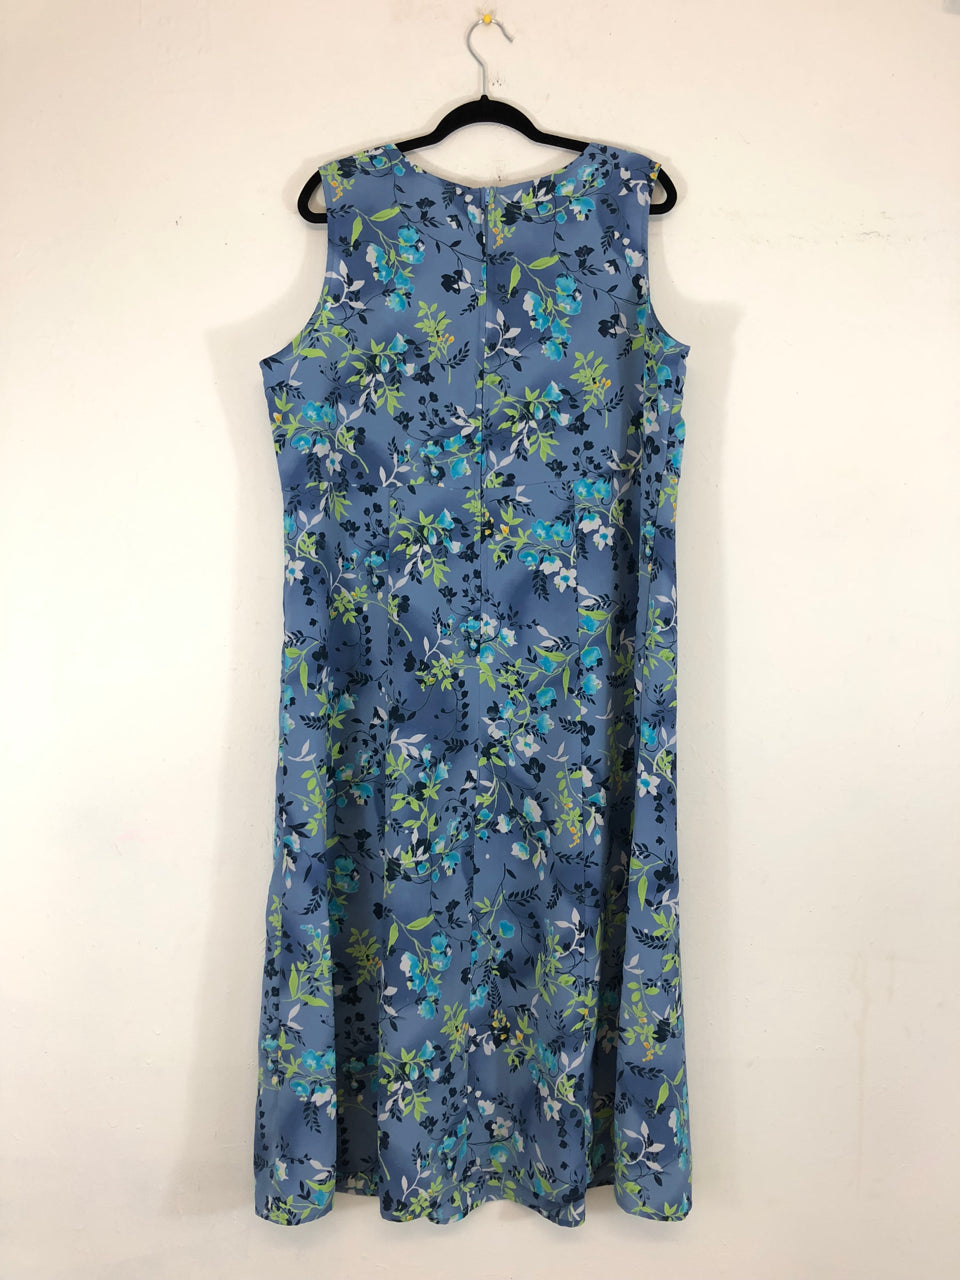 Chrysantheme Floral 90s Dress